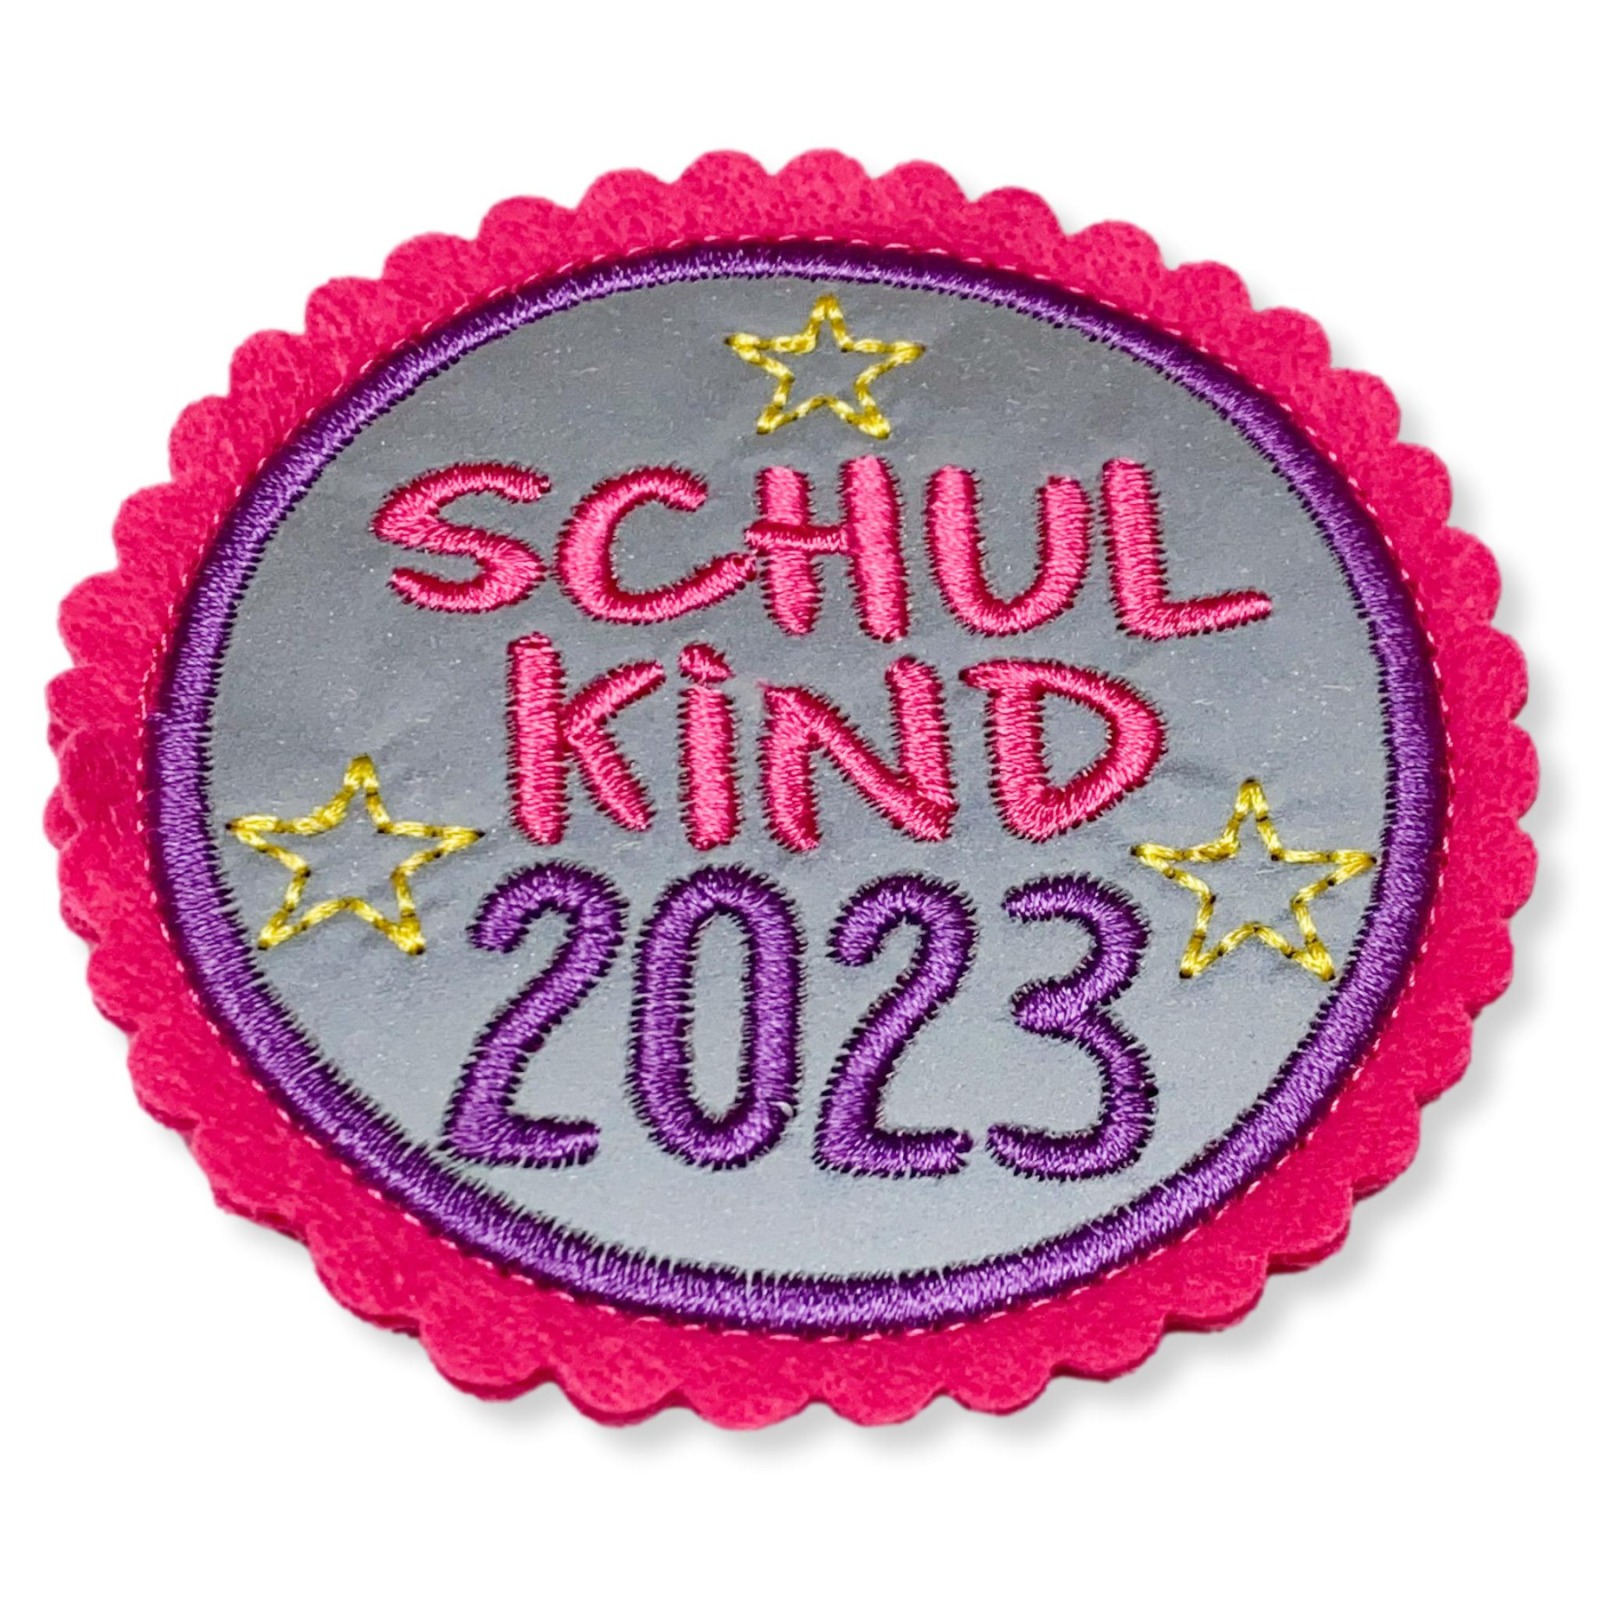 Klettie Schulkind 2023 8cm Durchmesser Reflektorstoff pink lila Schulranzen mit Klett 3